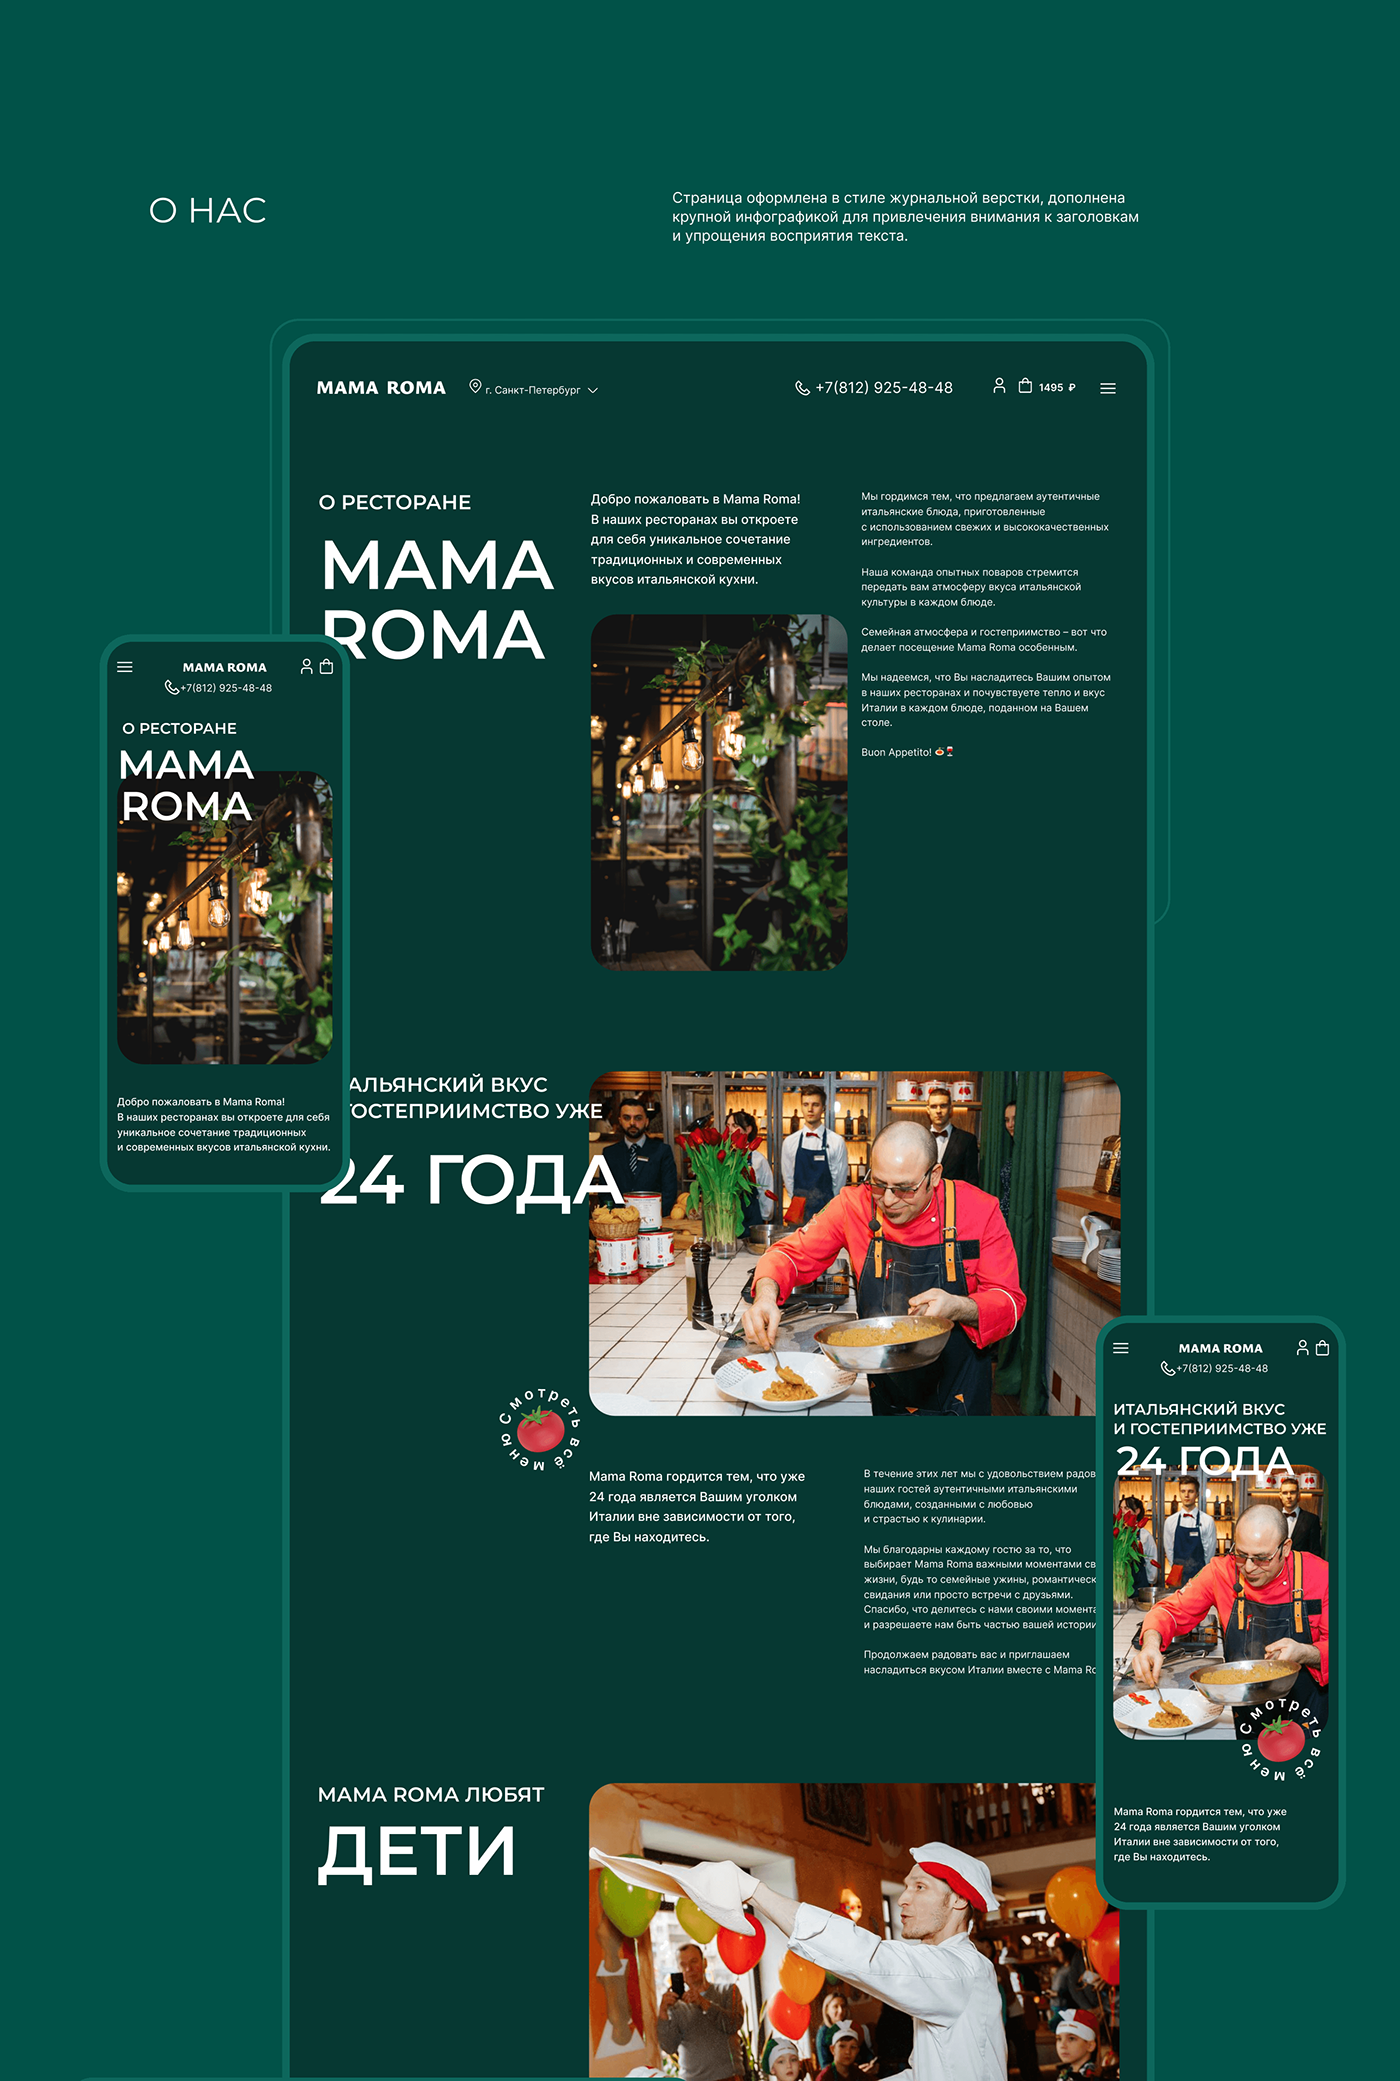 UI/UX Web Design  Website Food  restaurant ux UI italian Pizza Pasta